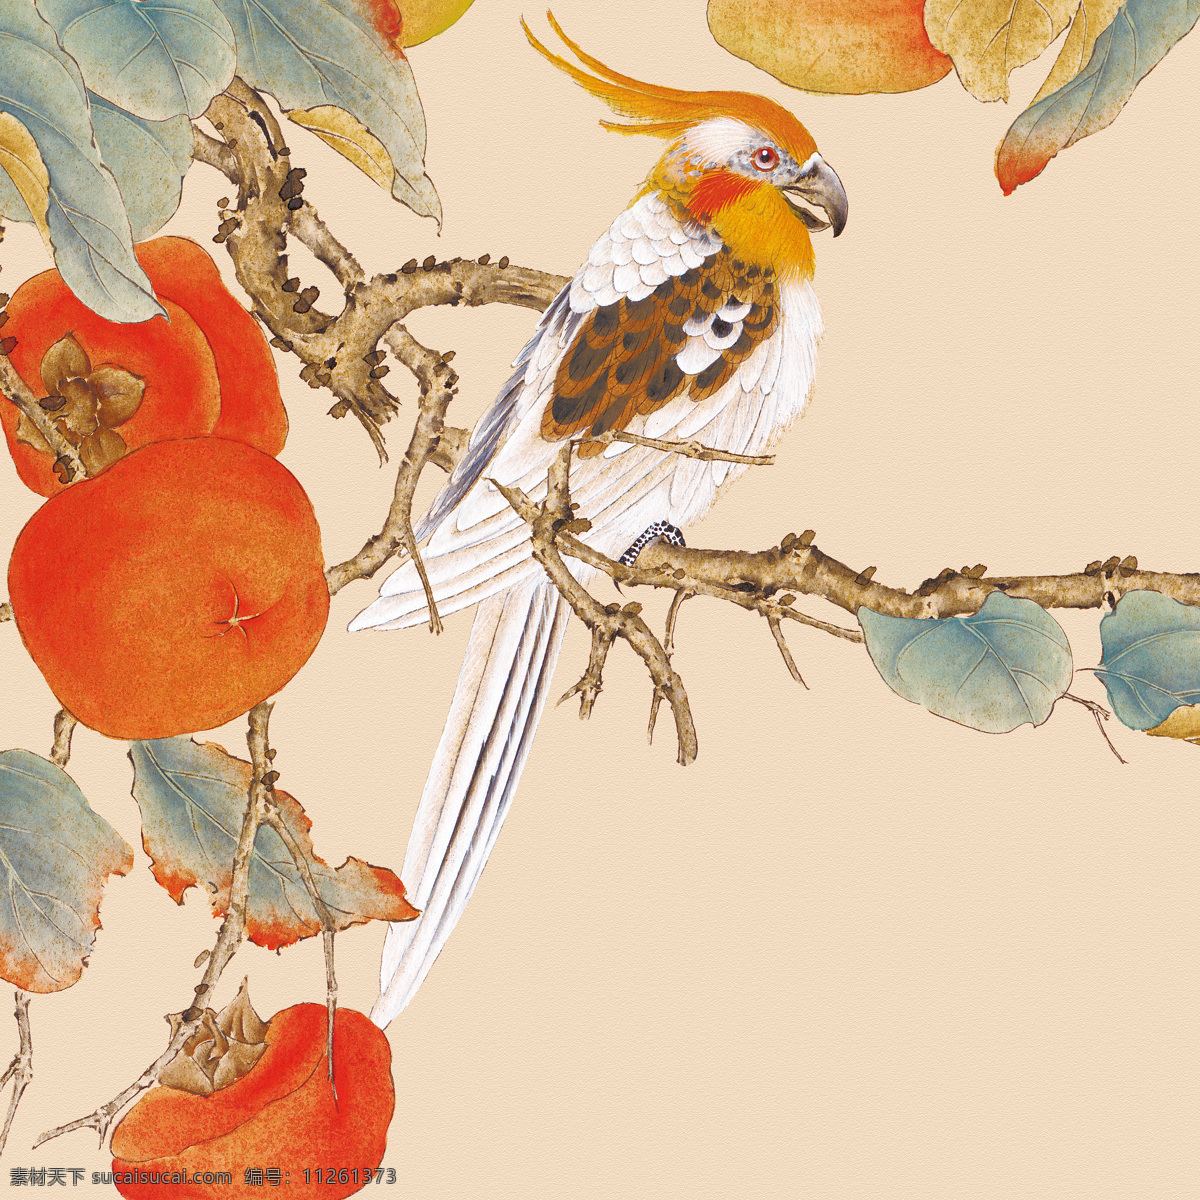 中式田园 工笔花鸟 漂亮的鸟 栩栩如生的鸟 中式画 高清 红果子 新中式 家居画 文化艺术 绘画书法